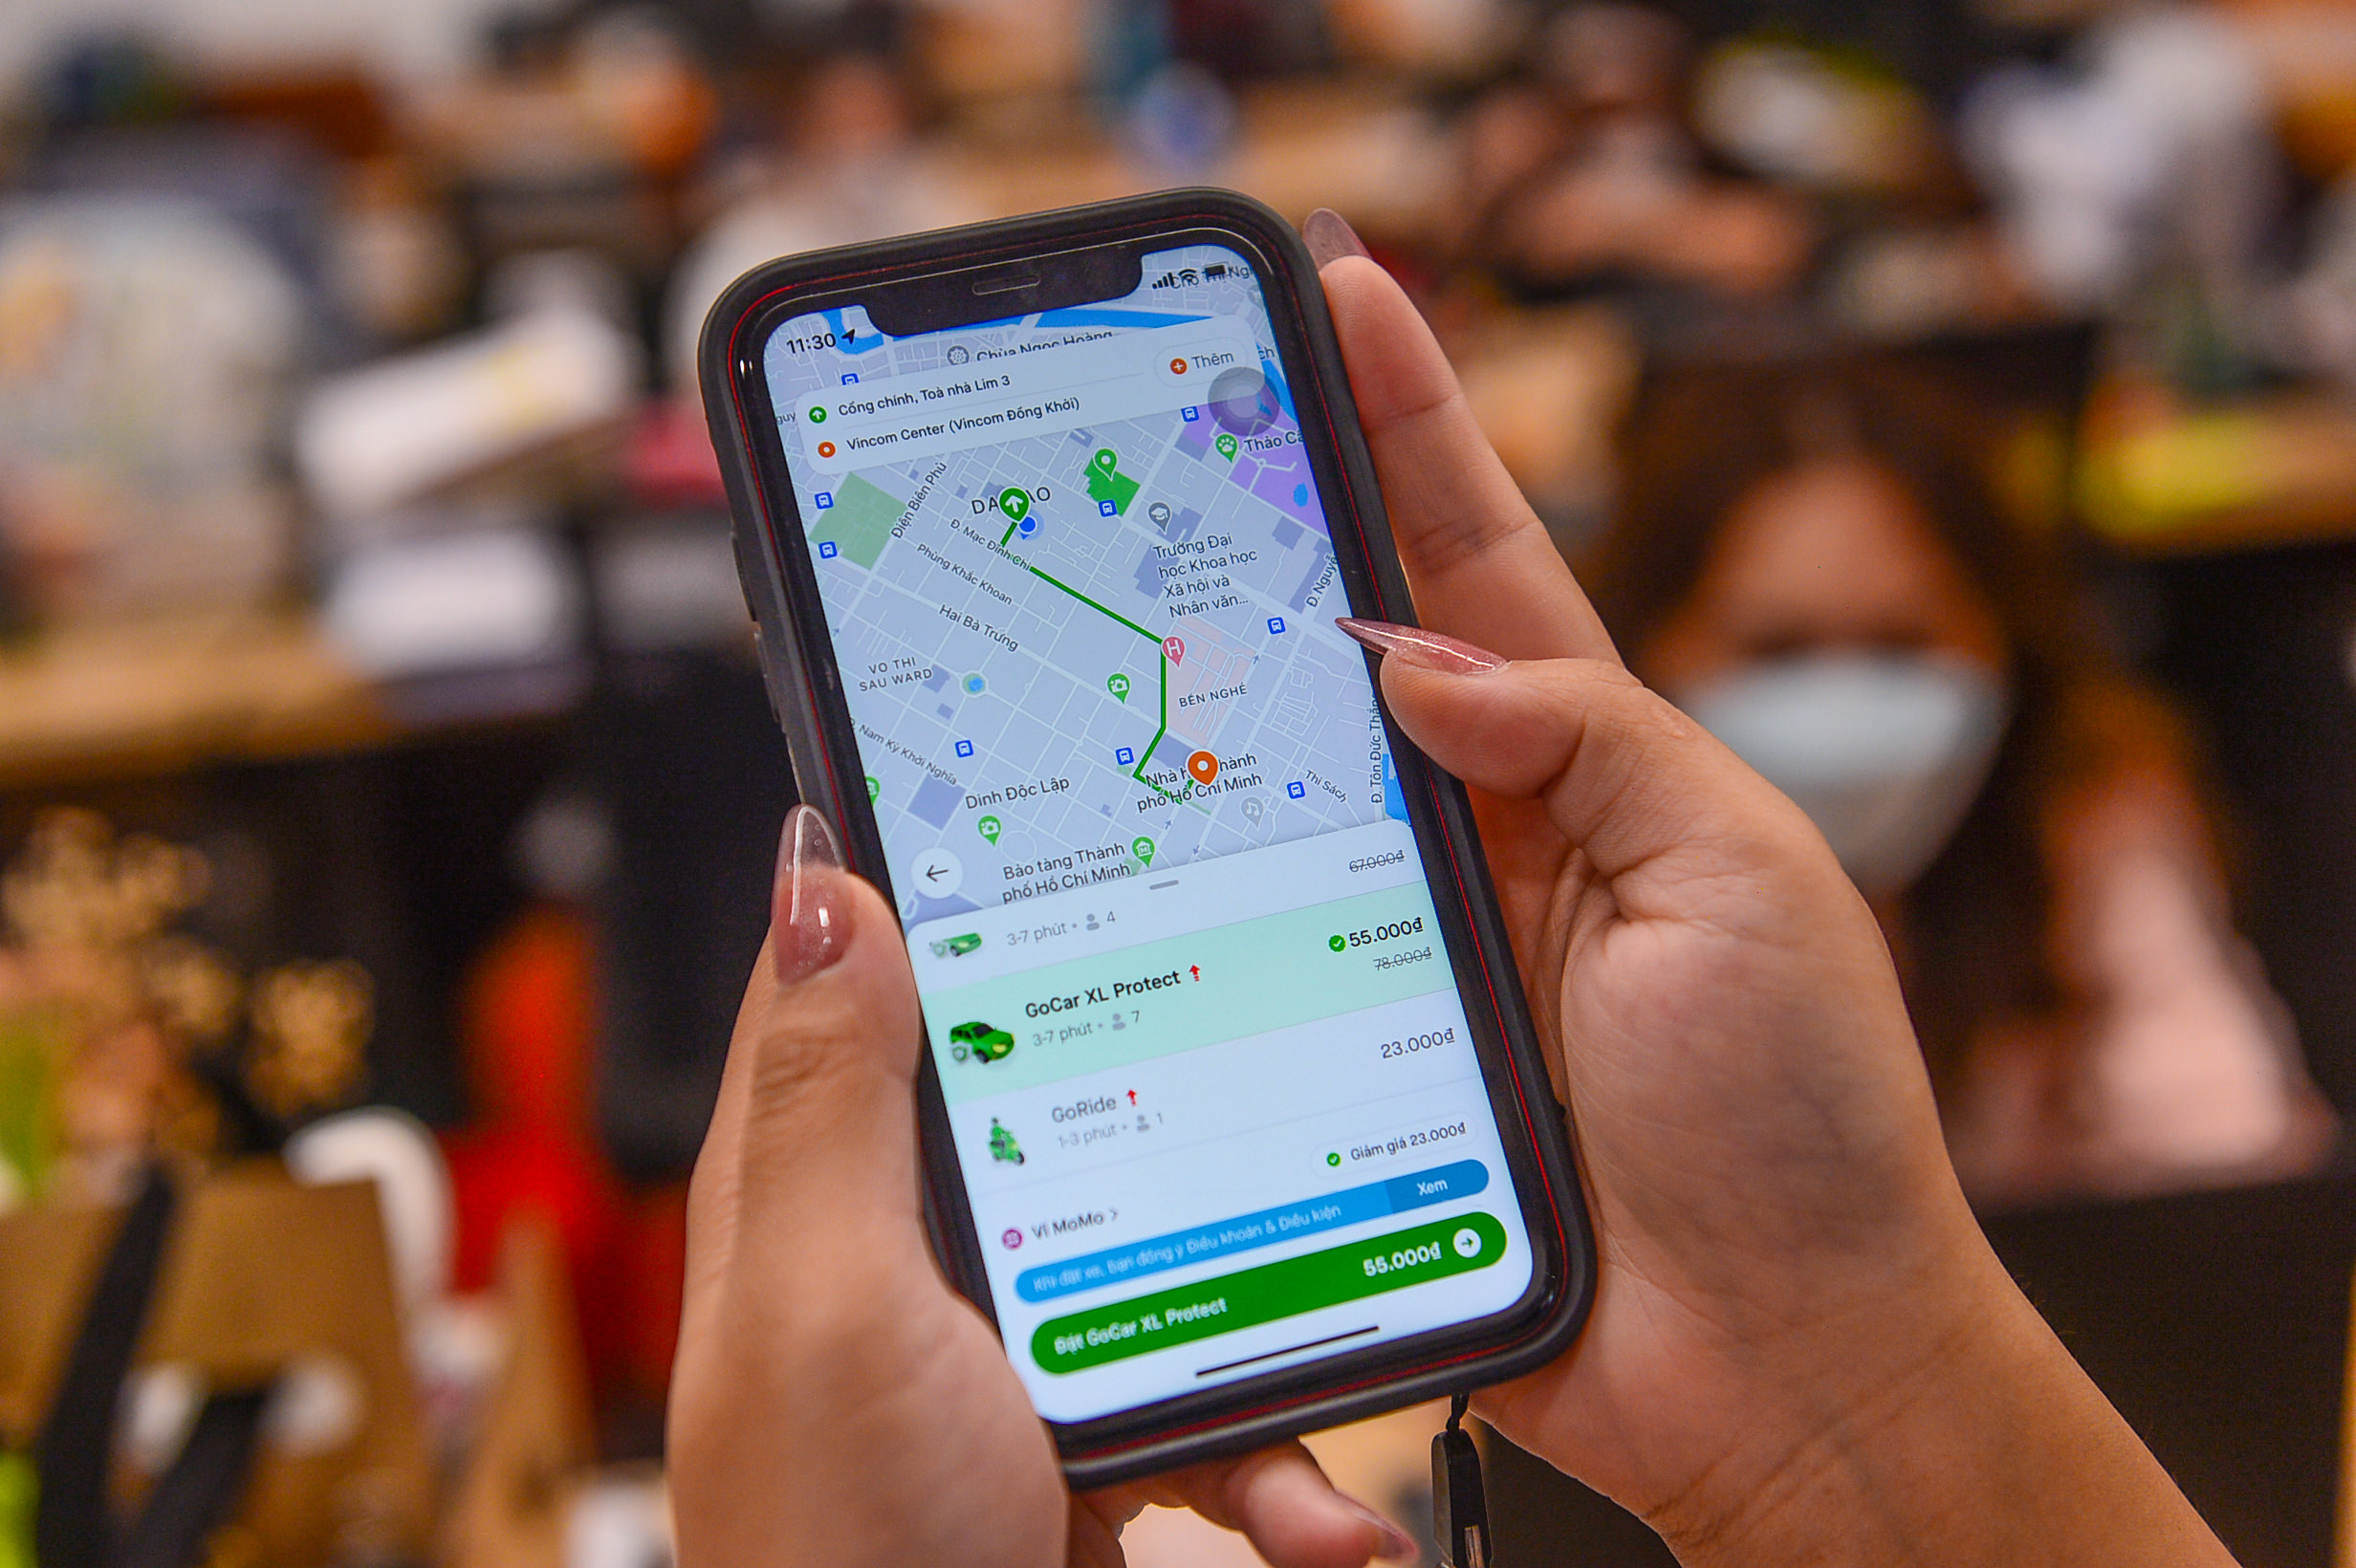 Gojek ra mắt dịch vụ gọi xe công nghệ 7 chỗ GoCar XL Protect tại TP Hồ Chí Minh và Hà Nội